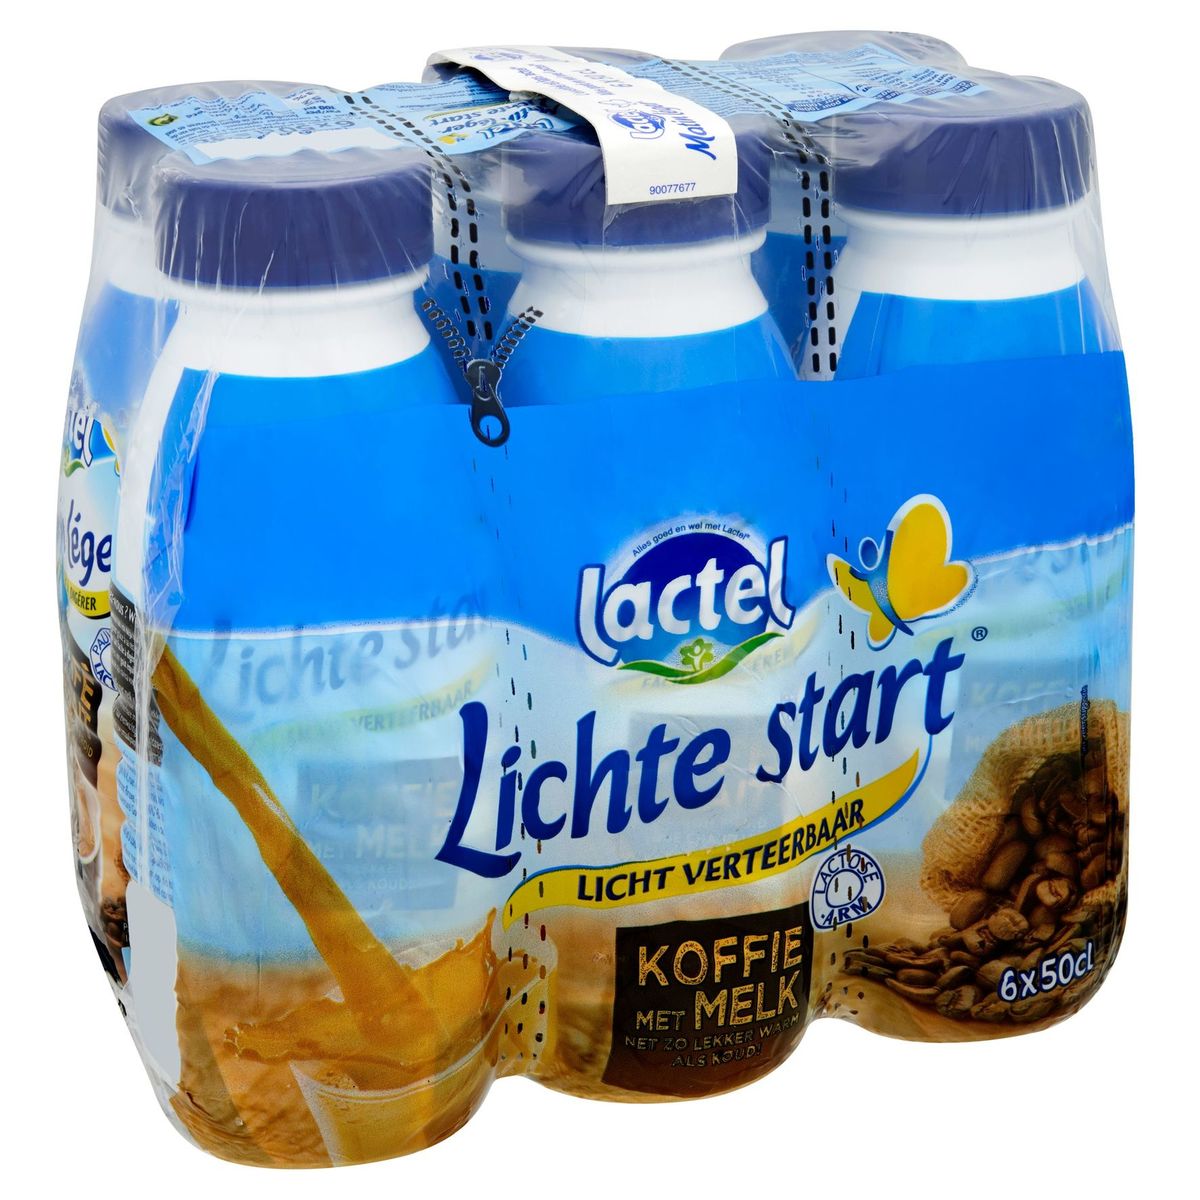 Lactel Lichte Start Koffie 6 x 50 cl